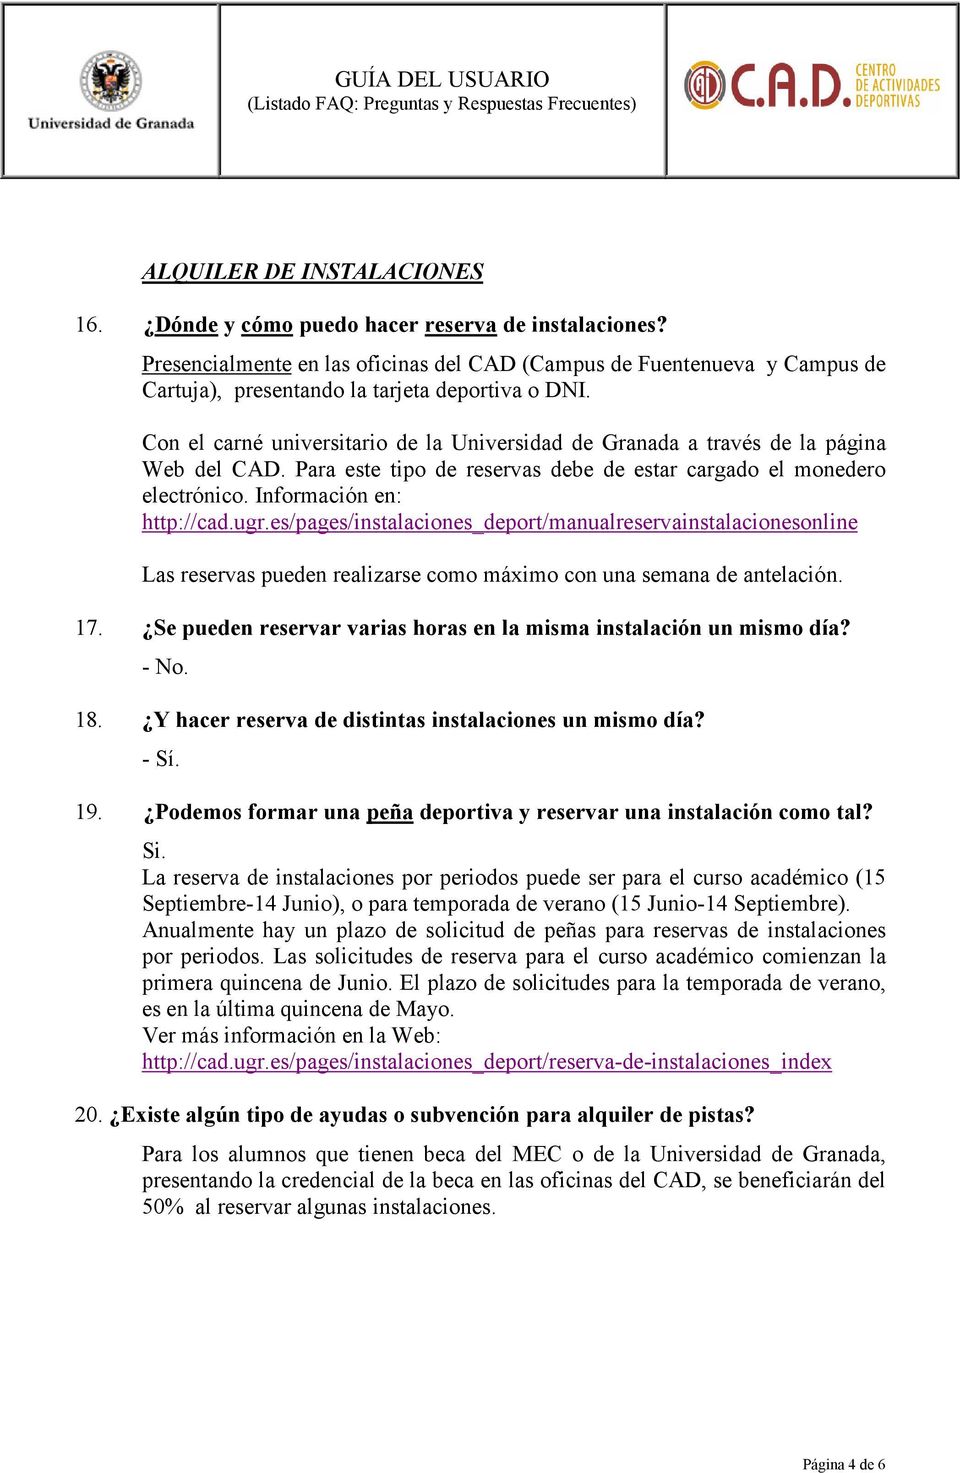 Con el carné universitario de la Universidad de Granada a través de la página Web del CAD. Para este tipo de reservas debe de estar cargado el monedero electrónico. Información en: http://cad.ugr.